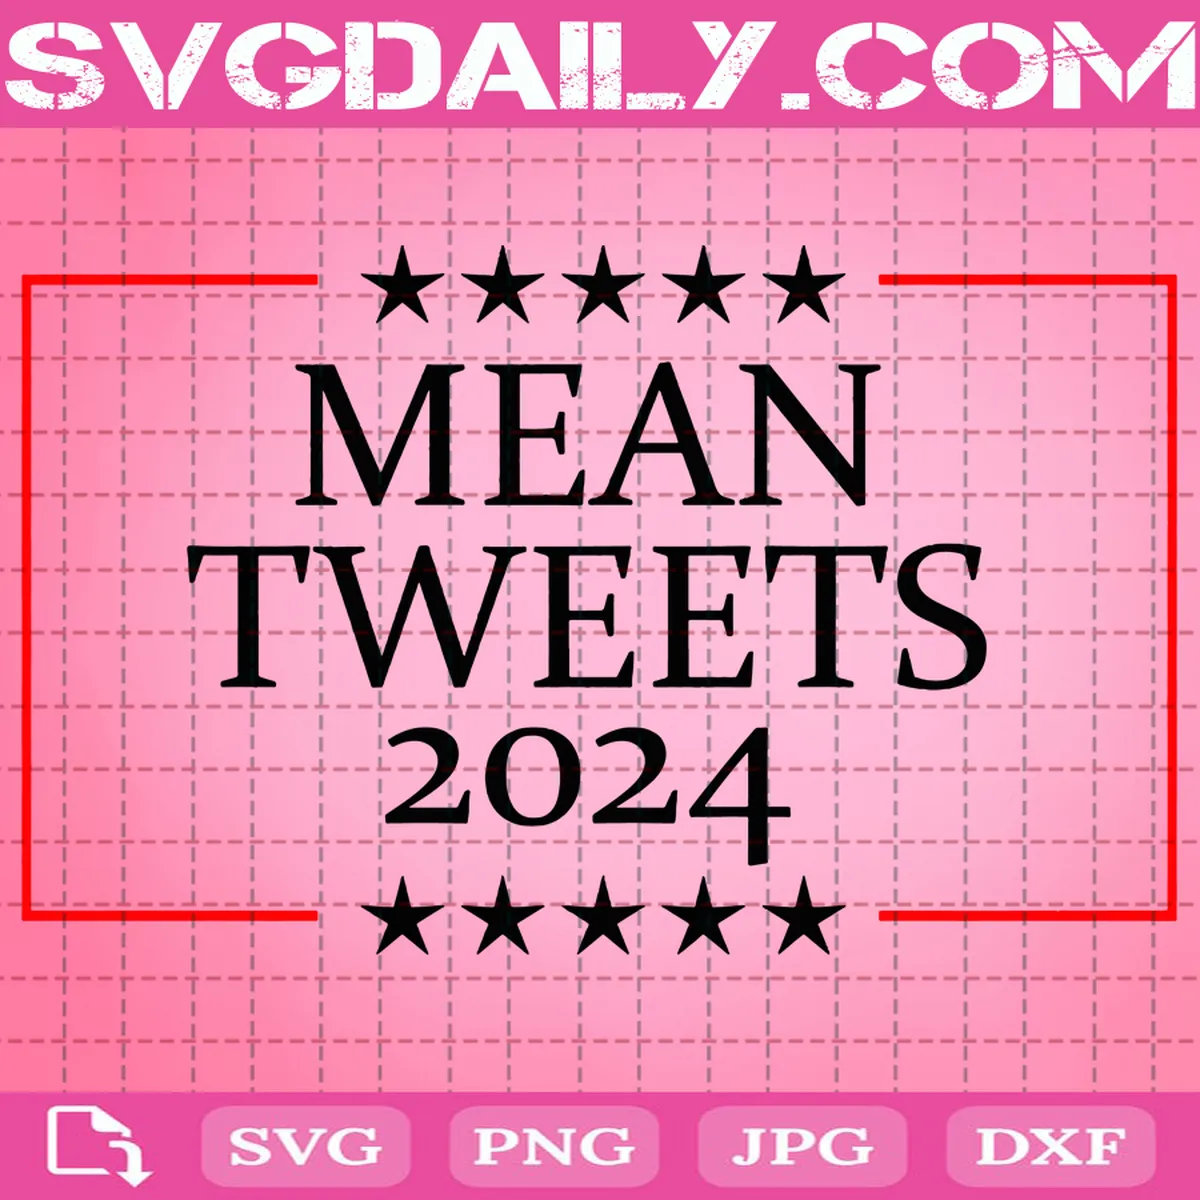 Mean Tweets 2024 Svg Funny Election Svg Svg Png Dxf Eps Ai Instant Download.webp